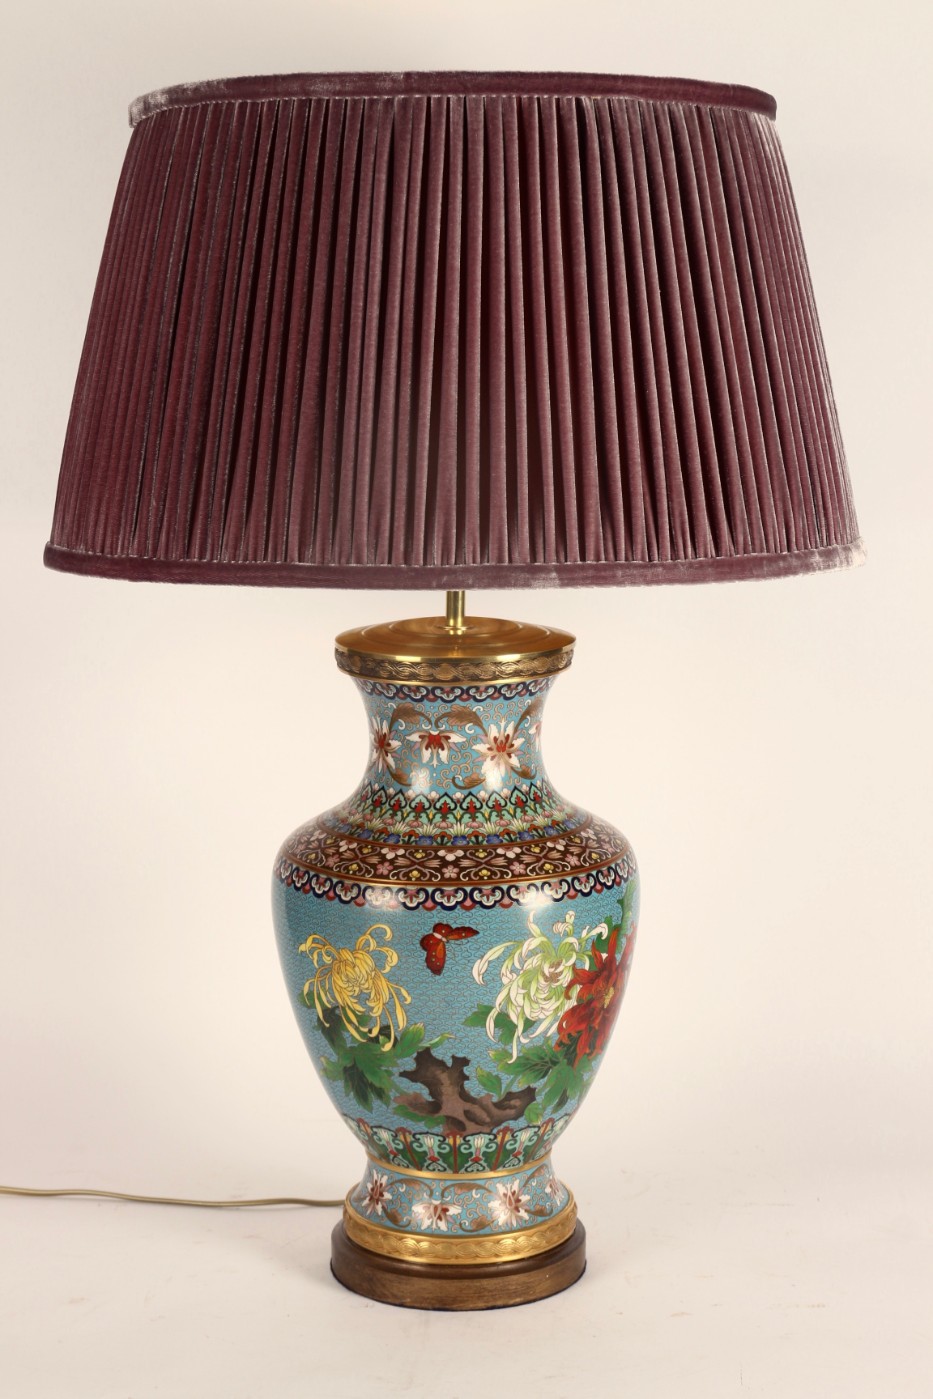 Cloisonné lamp